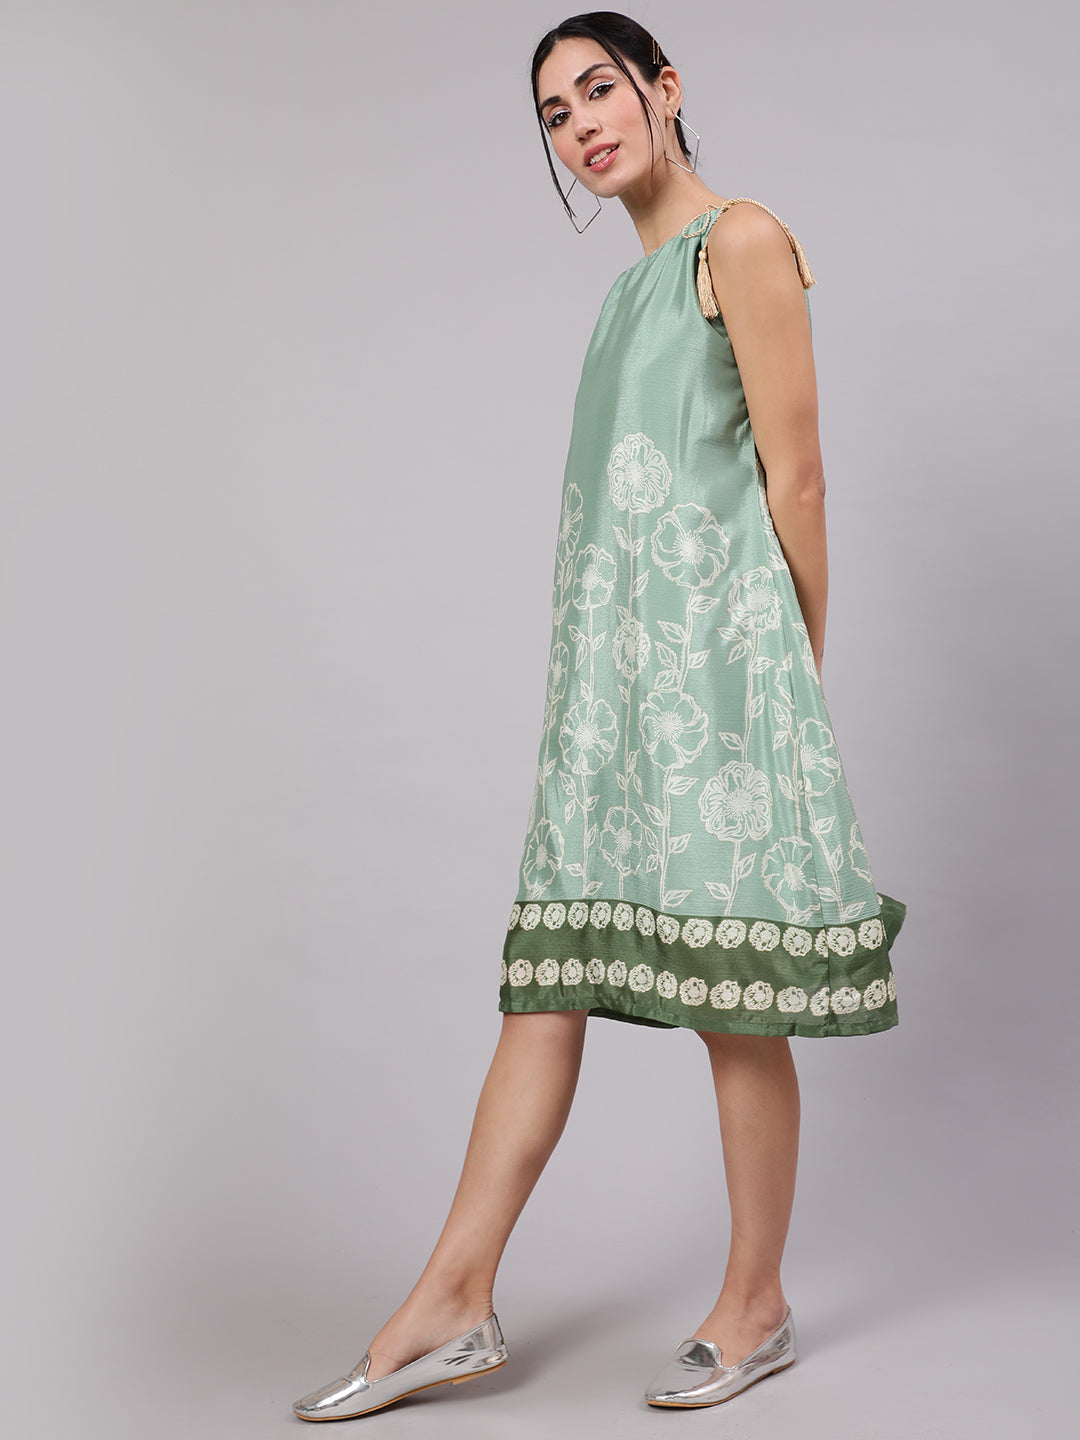 Green Floral Digital Print Dress